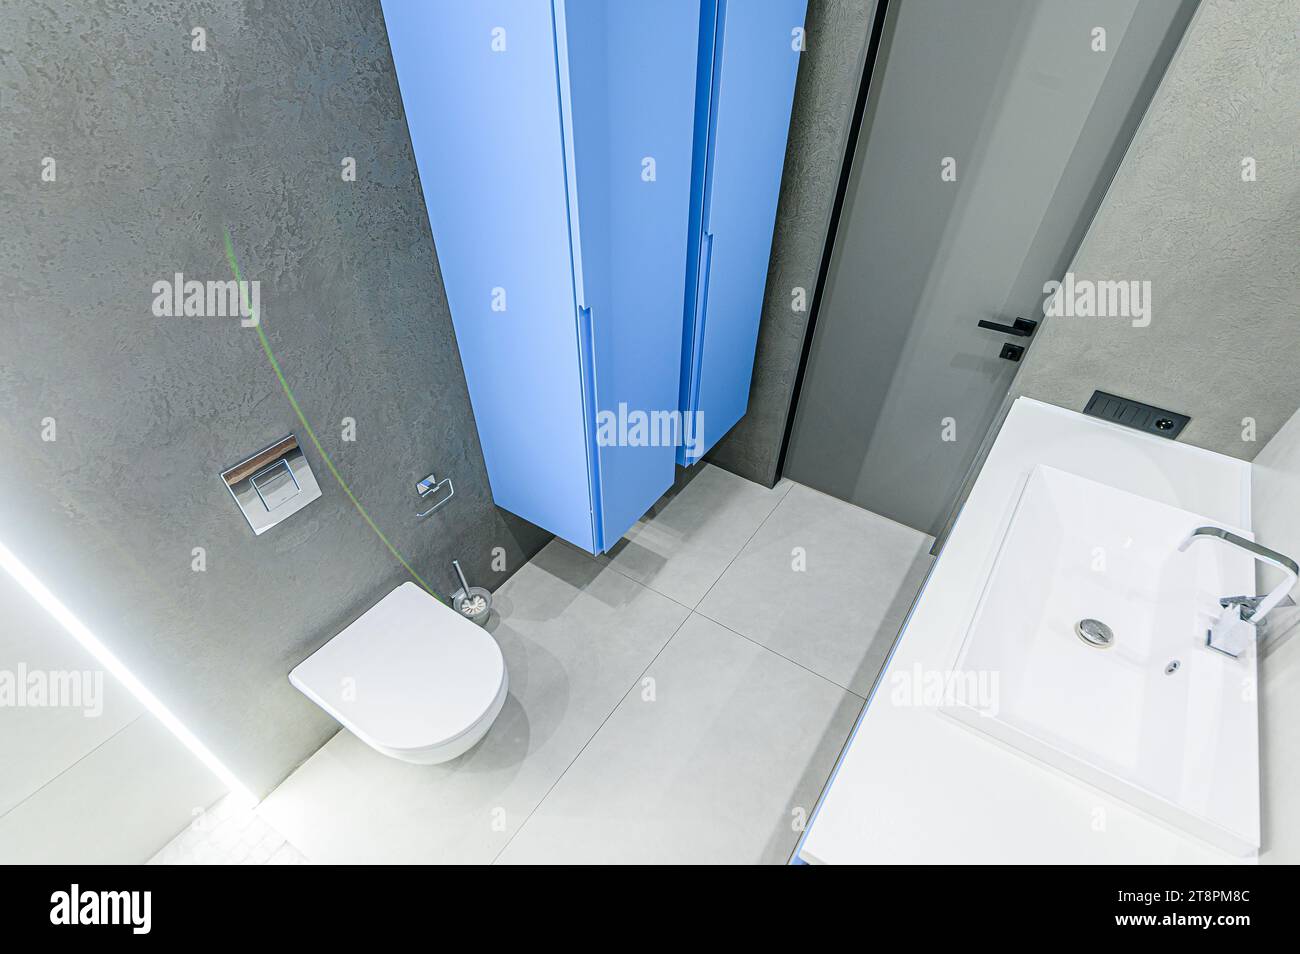 salle de bain intérieure appartement, lavabo, éléments décoratifs, wc Banque D'Images